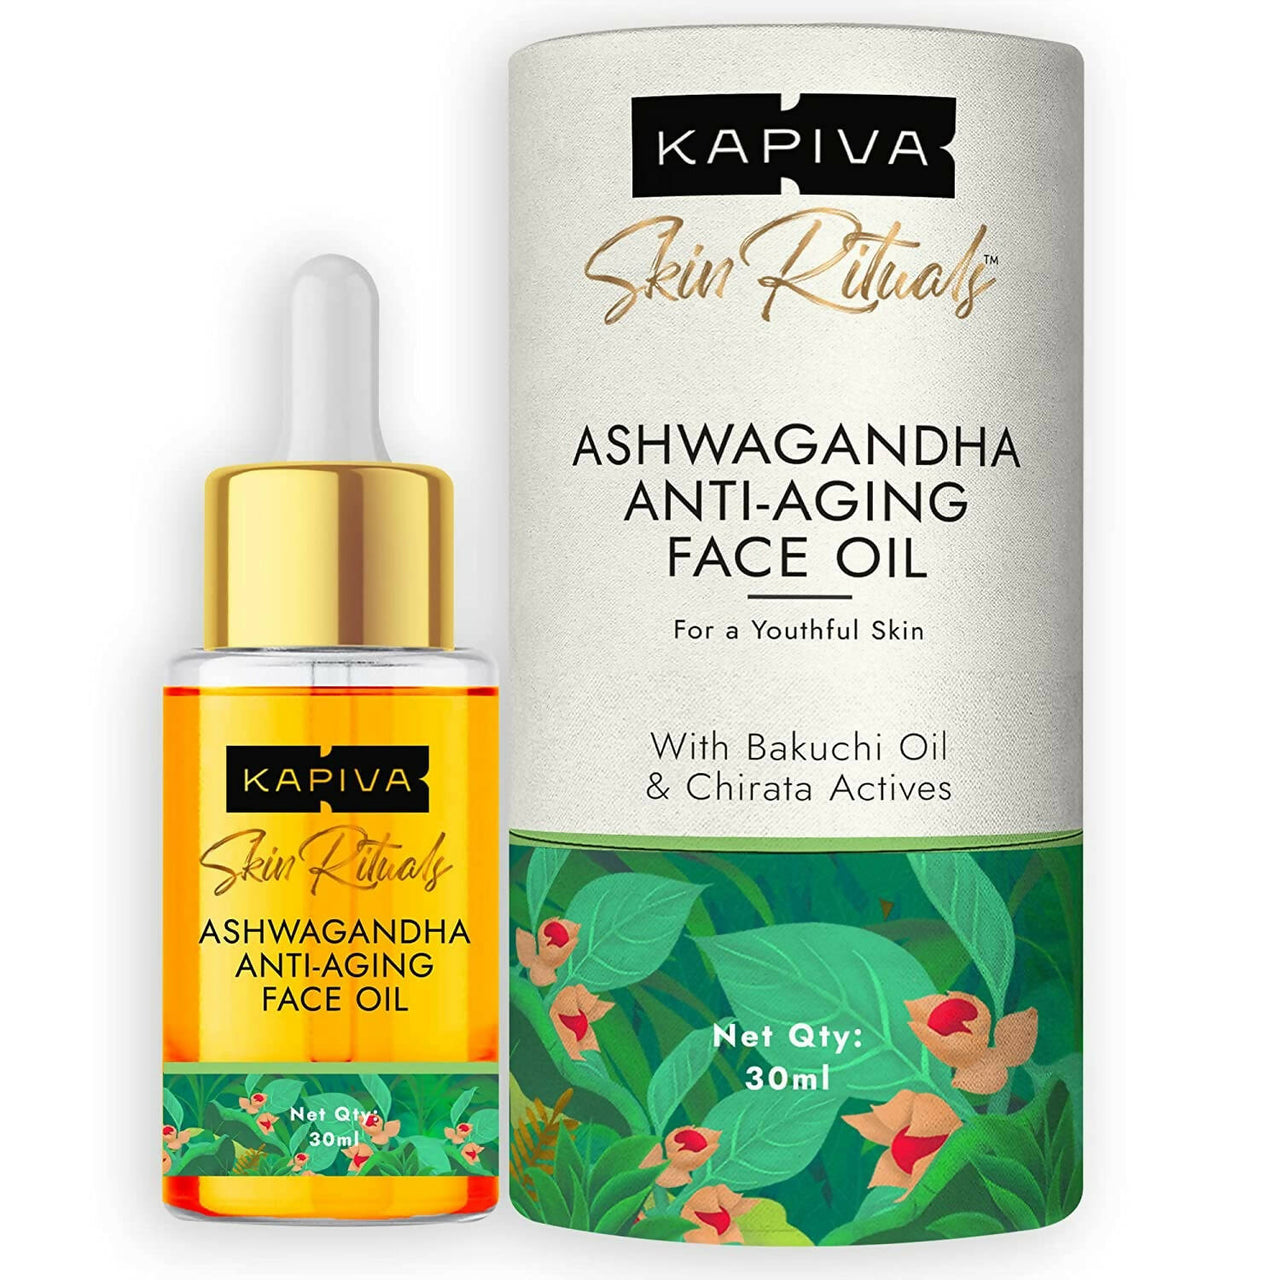 Kapiva Ayurveda Skin Rituals Ashwagandha Anti-Aging Face Oil - Distacart